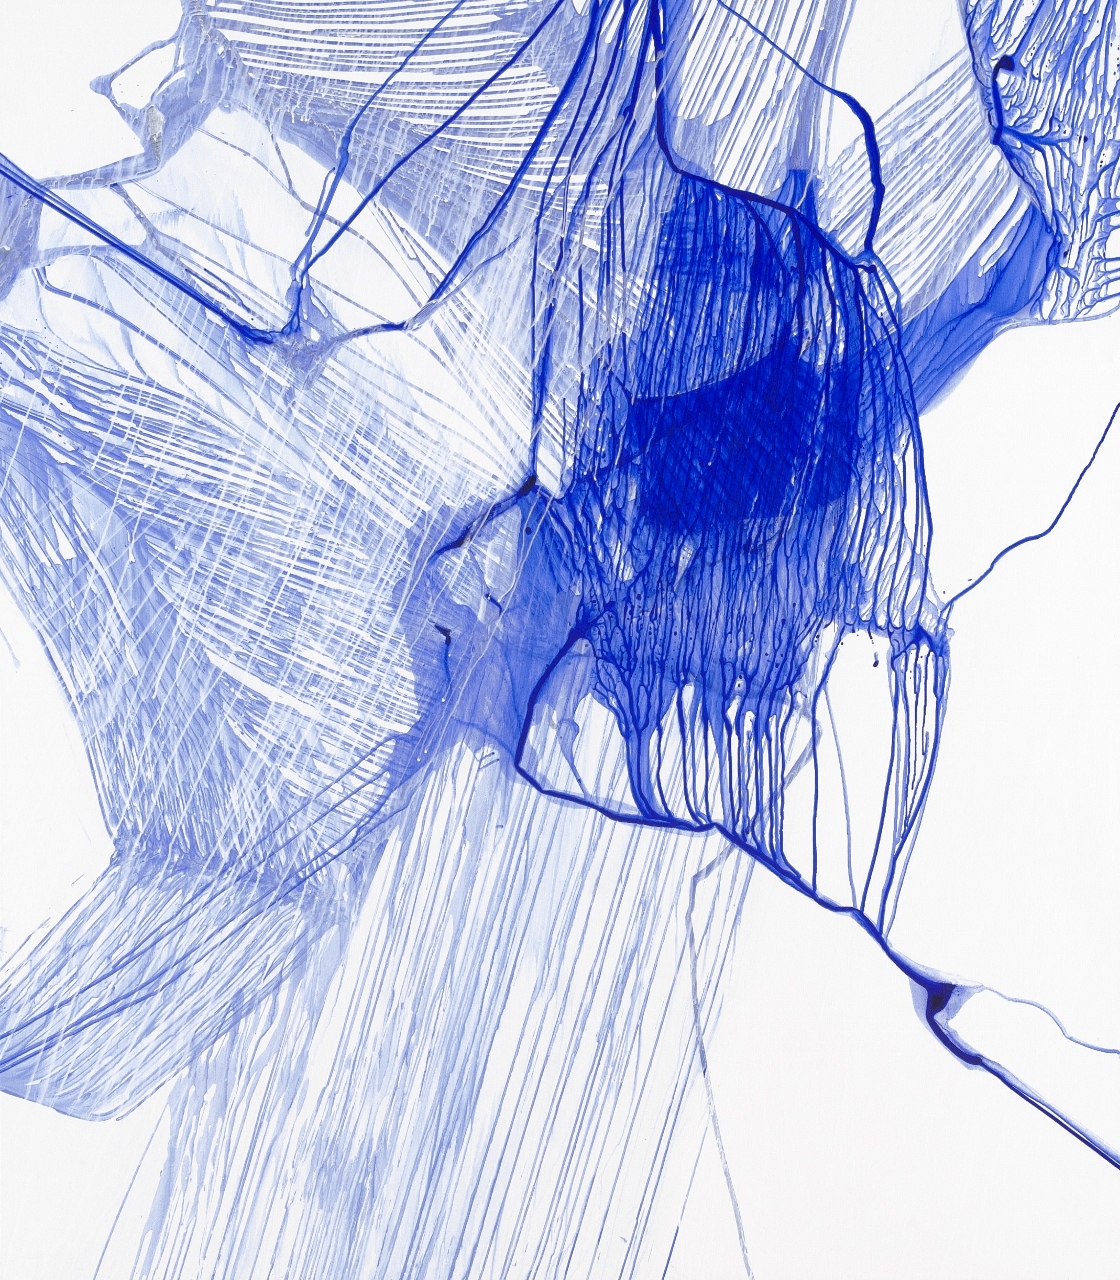 Urszula Wilk, Seria Bluemetrie nr 21, płótno, akryl, olej, 200 x 175 cm, 2017 (źródło: materiały prasowe organizatora)